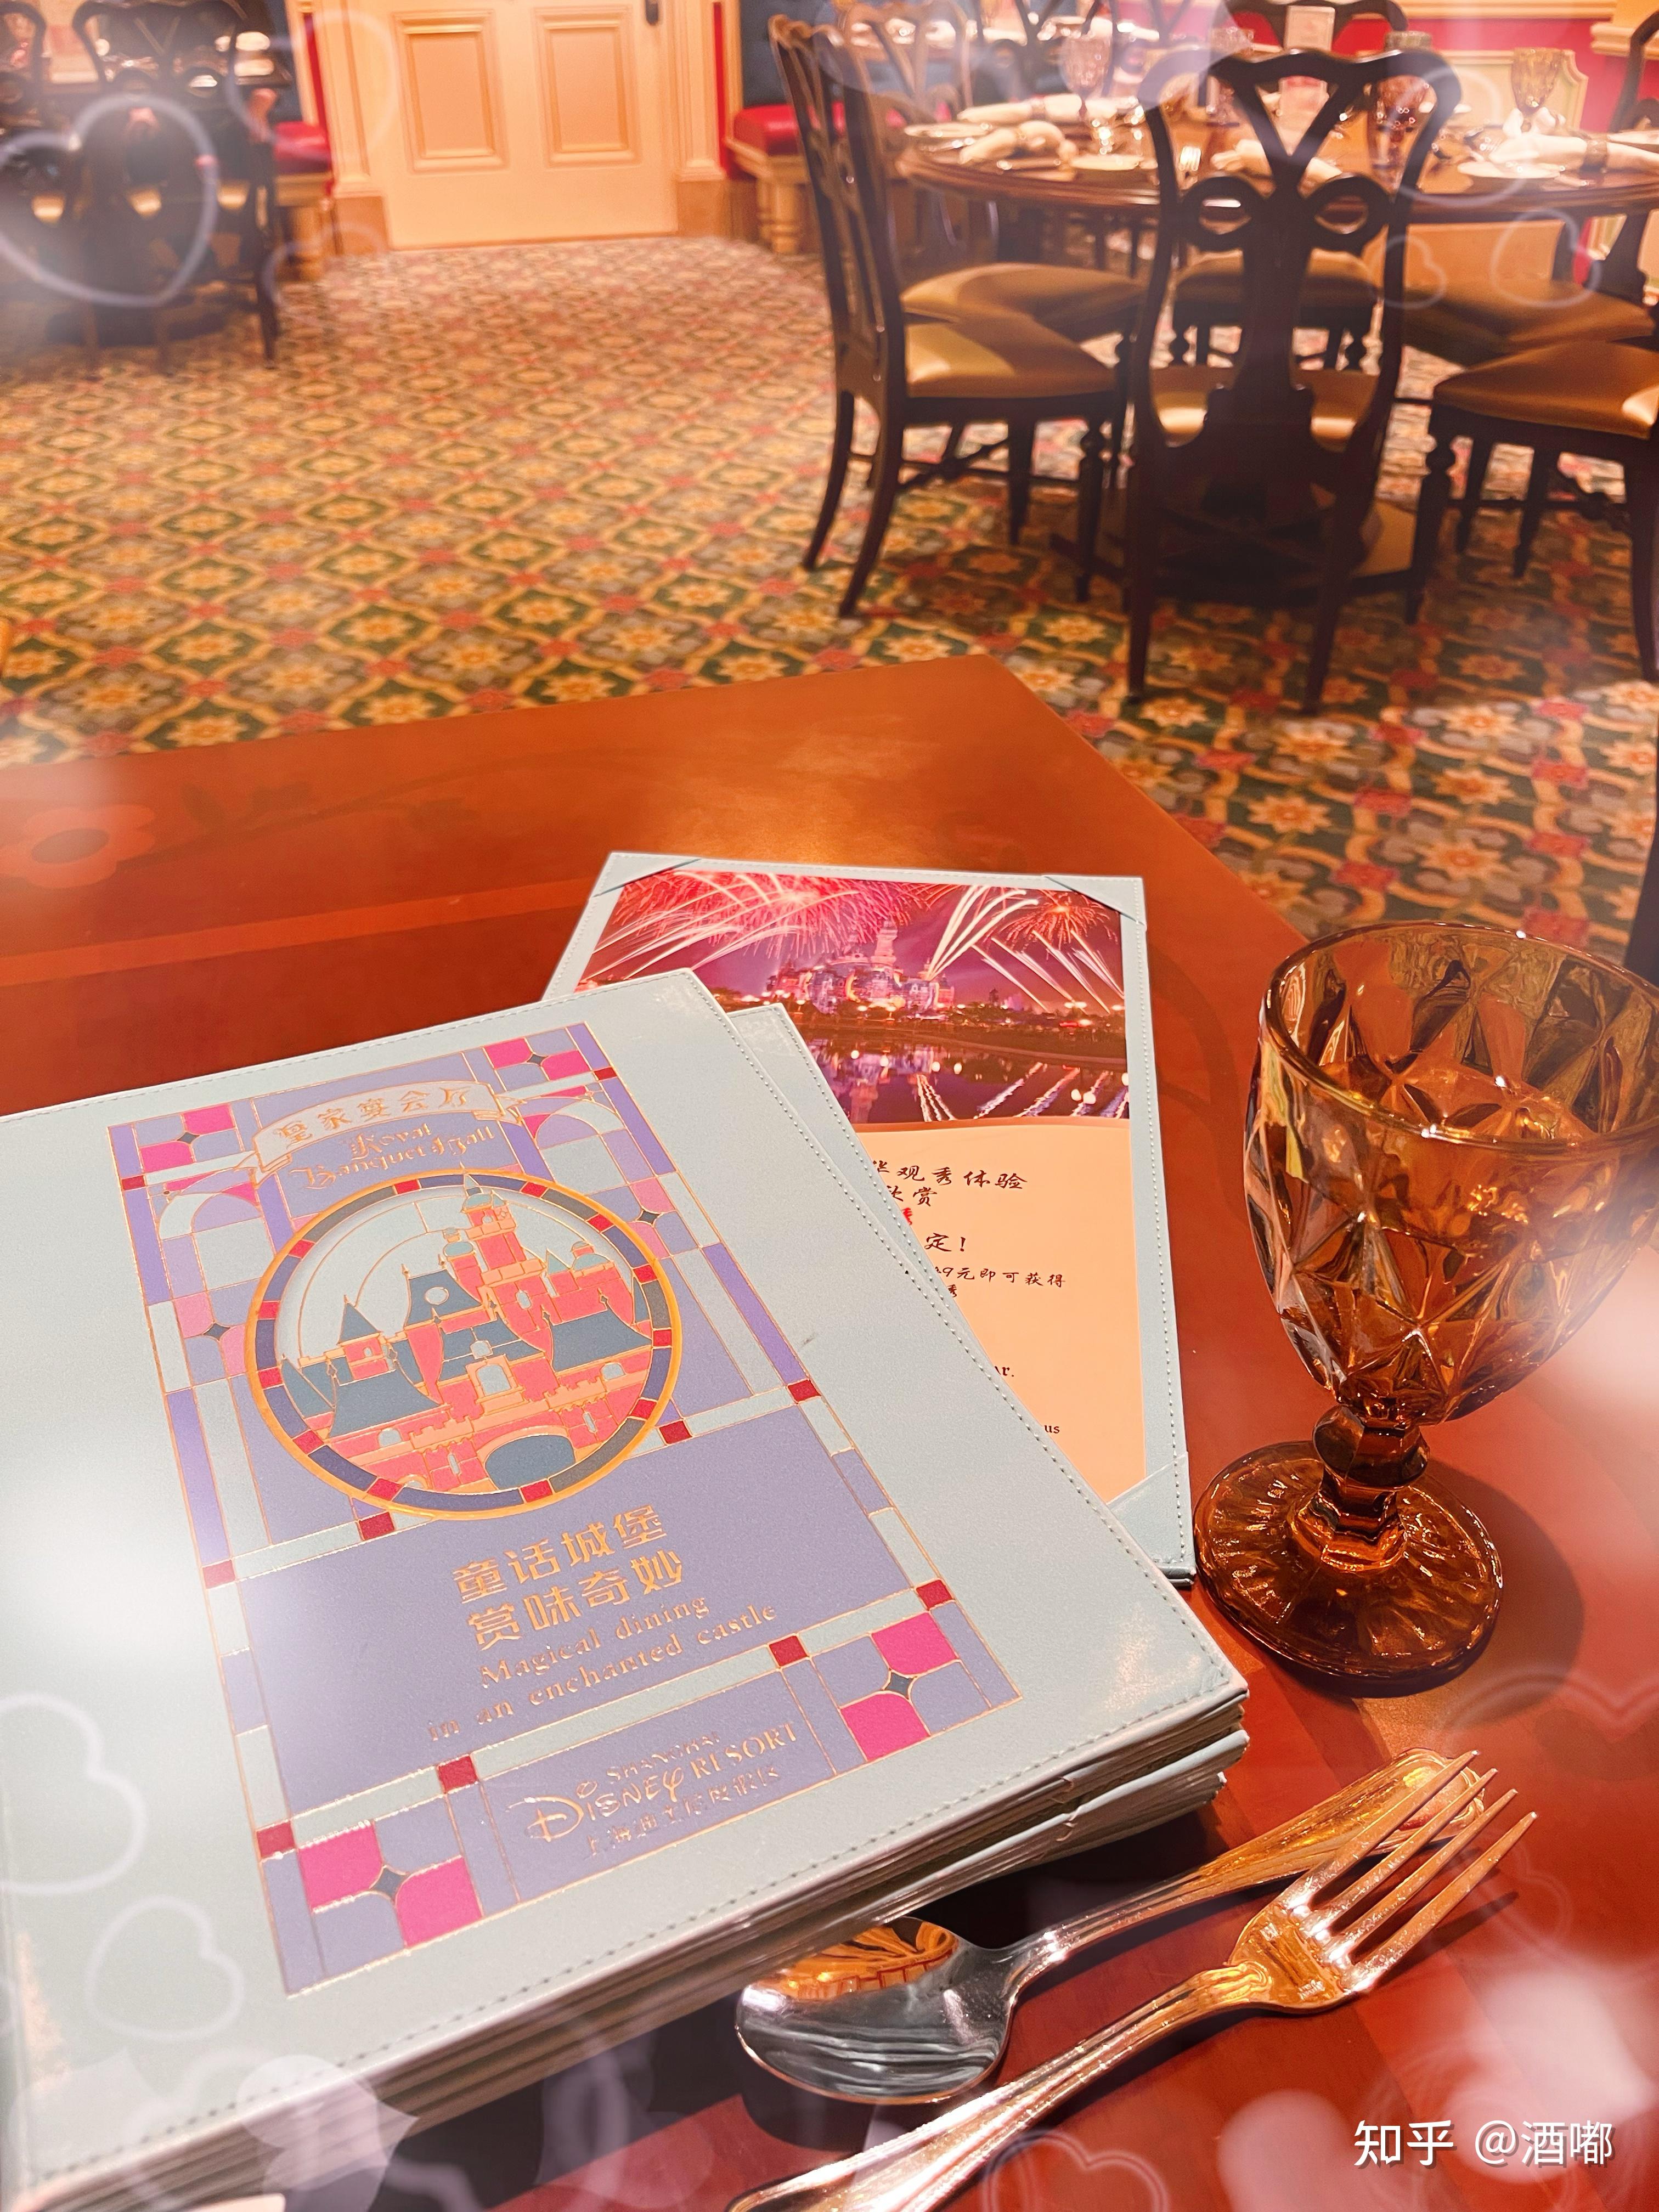 皇家宴会厅 | 餐饮 | 上海迪士尼度假区